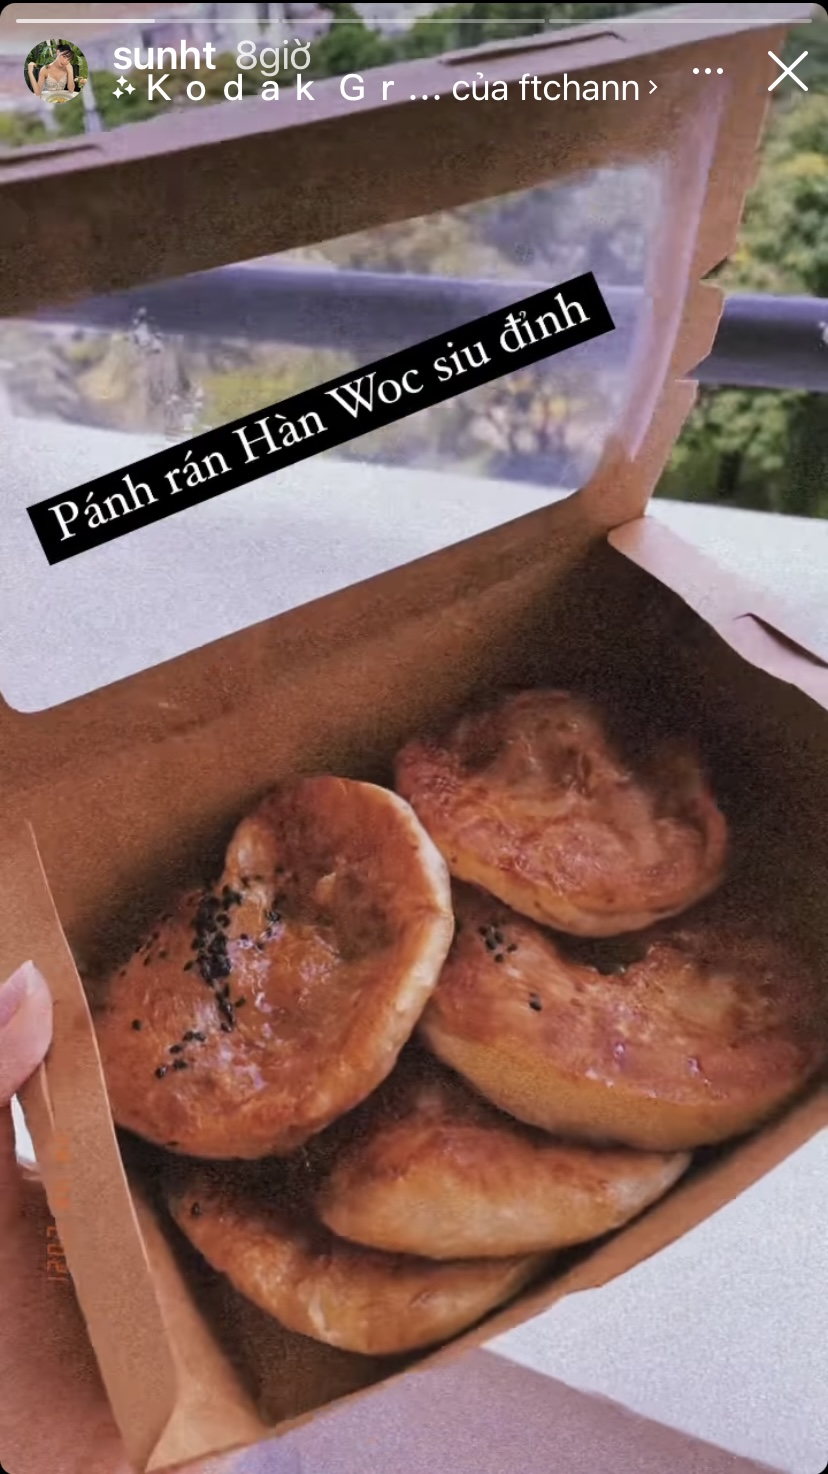 Sun Ht hôm nay khoe trên mạng xã hội những chiếc bánh rán Hàn Quốc vừa đẹp mắt vừa ngon miệng.